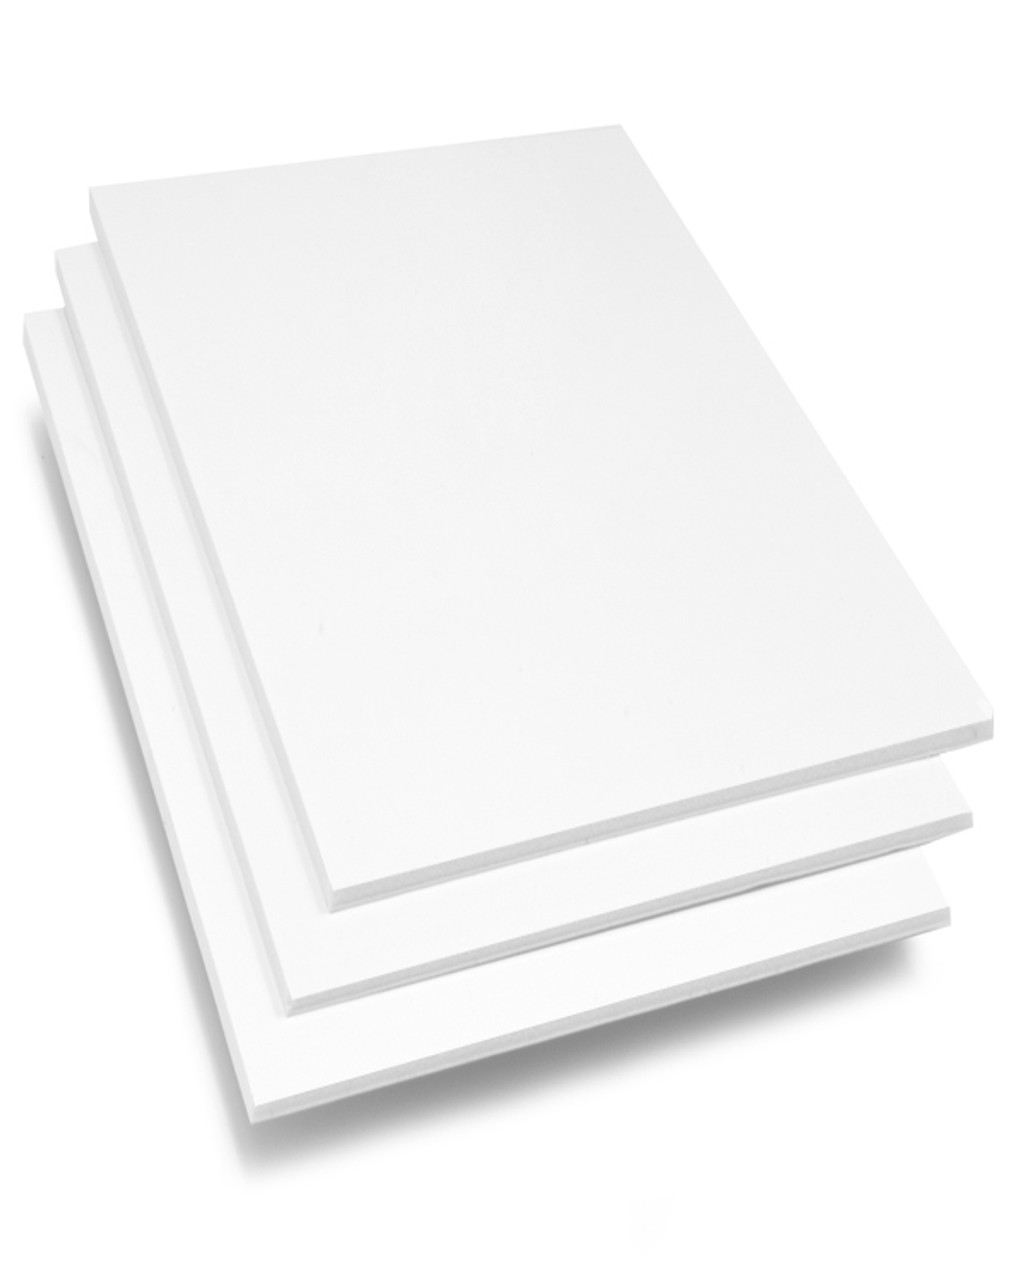 30 x 40 White Foam Board Pack of 10, 40 x 30 - Harris Teeter